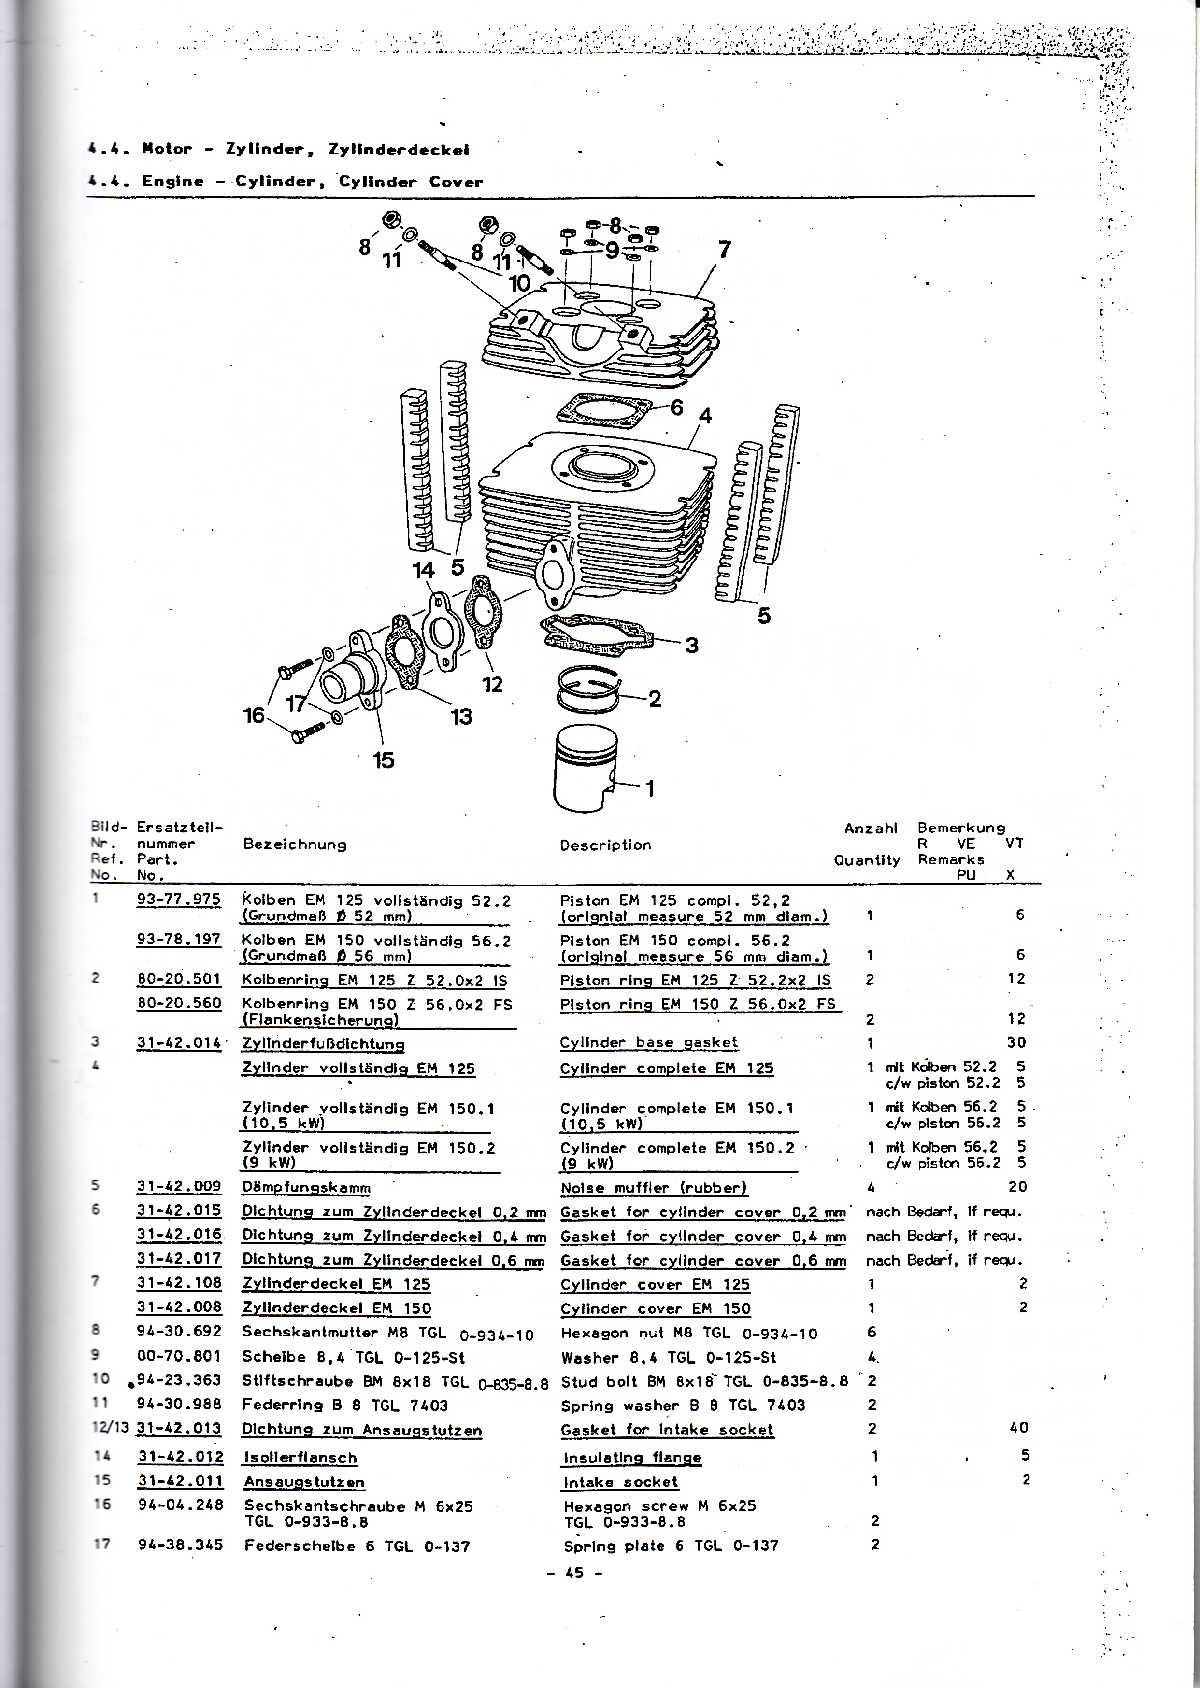 Katalog MZ 150 ETZ, MZ 125 ETZ - 4.4. Engine — Cylinder, Cyllnder Cover